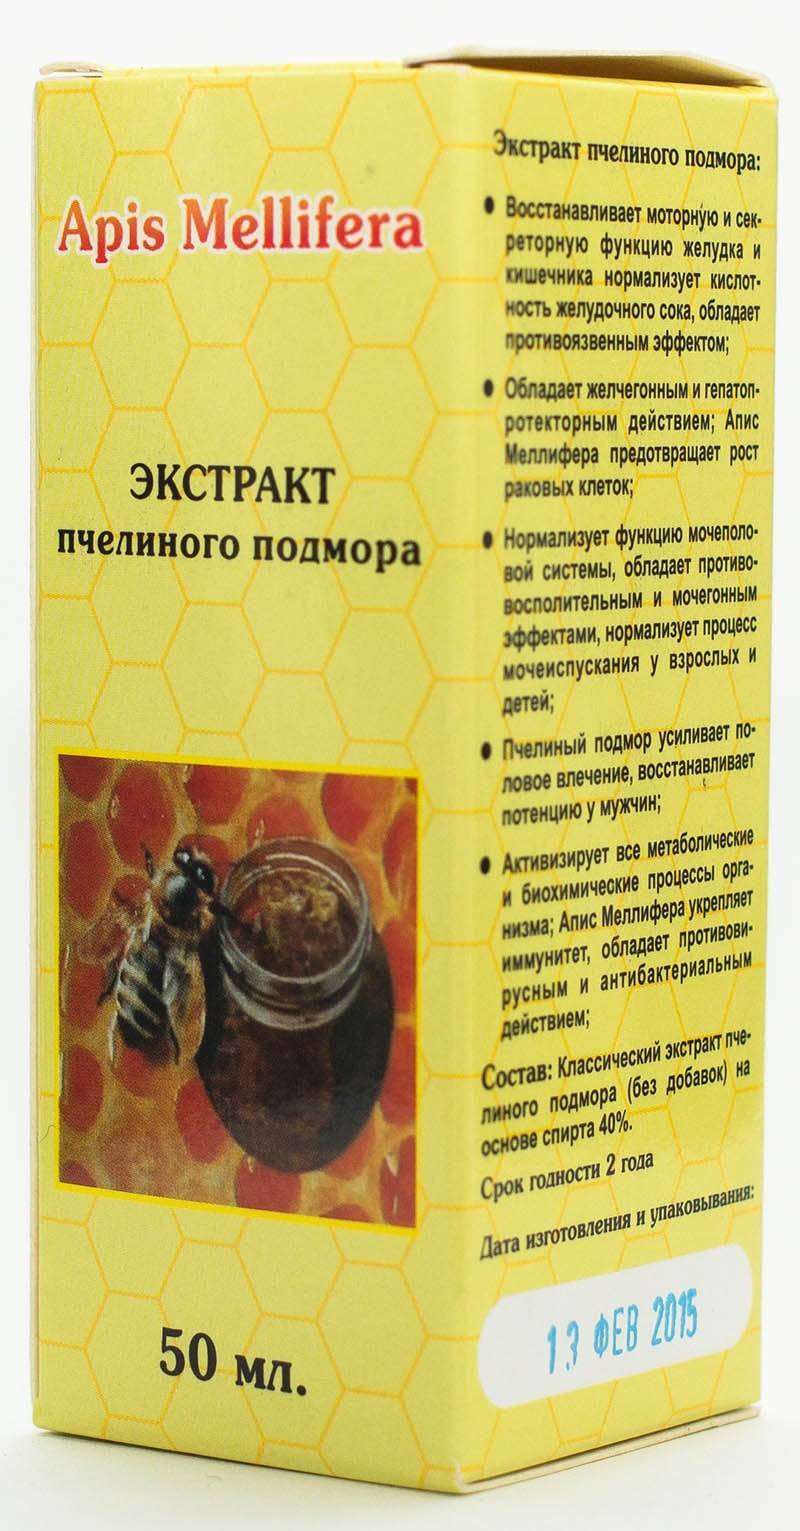 Пчелиный подмор: состав, польза, вред, как принимать и хранить